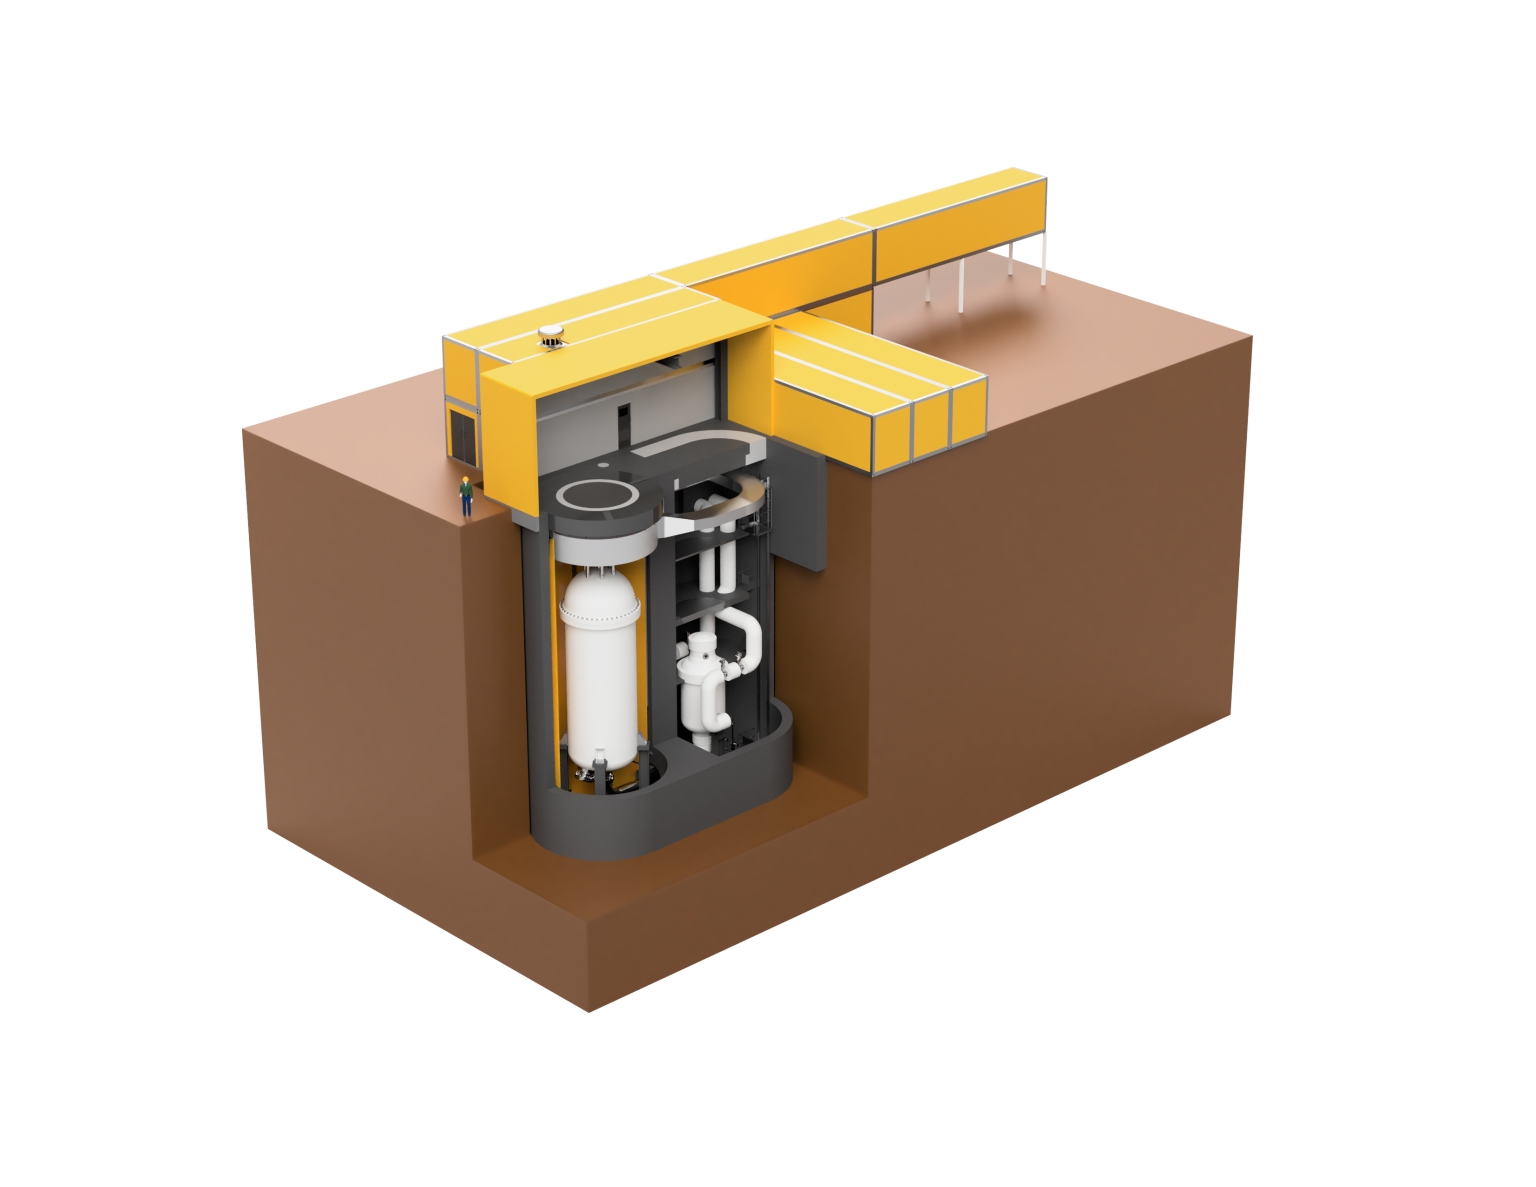 USNC décrit son MMR comme un réacteur «Walk-Away» dont le combustible ne fond pas en cas d’accident. Le concept est prévu pour une durée d’exploitation de 20 ans, et ce avec un seul chargement de combustible.